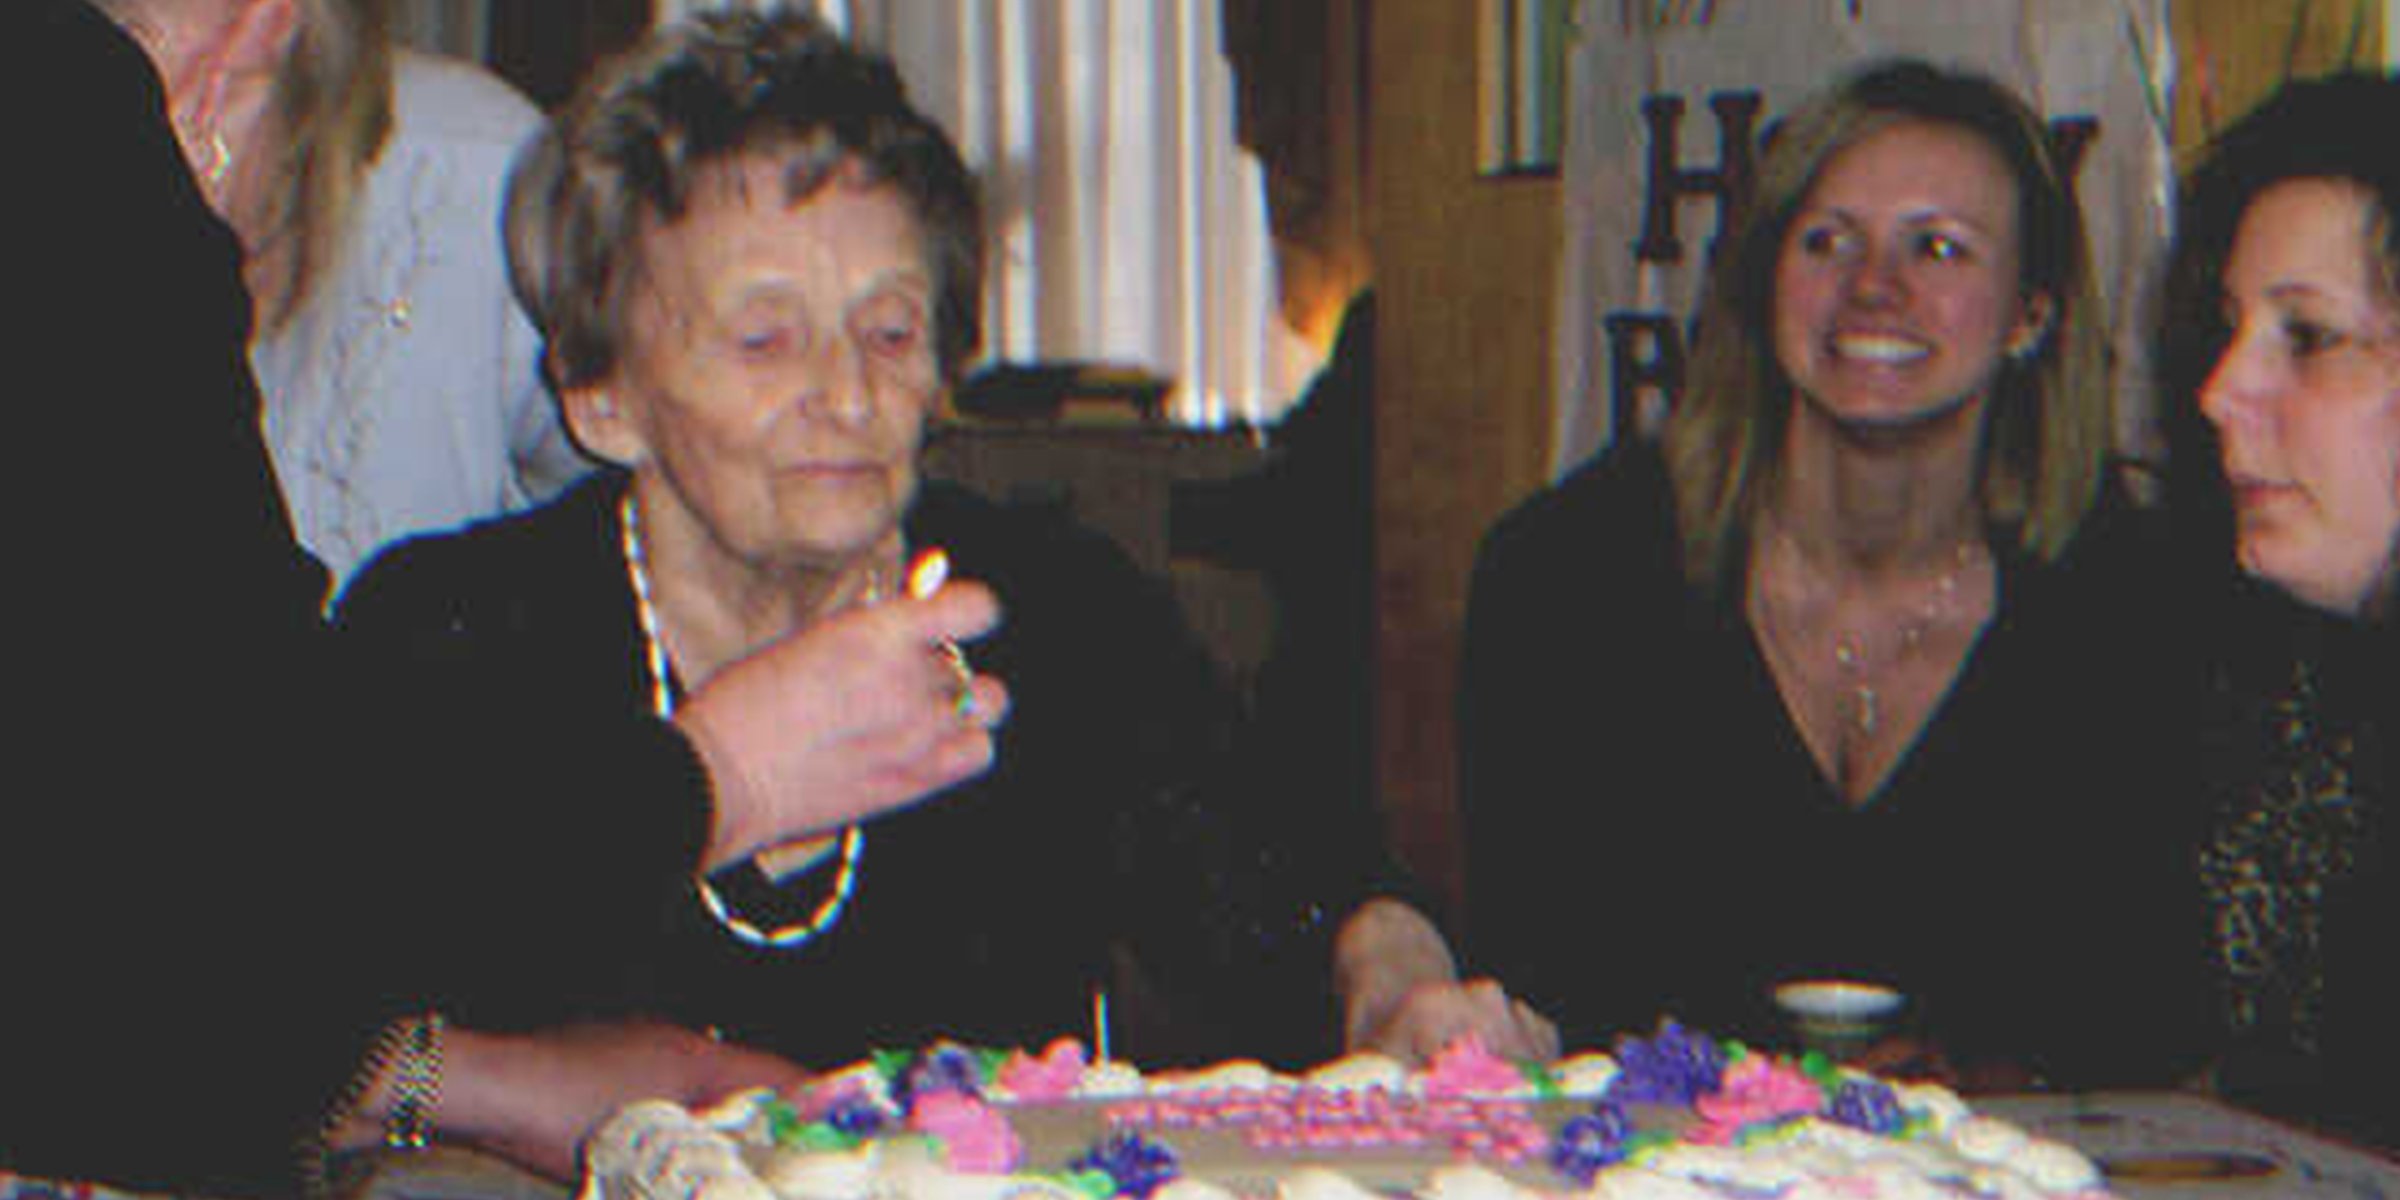 Una mujer mayor festejando su cumpleaños | Foto: Flickr.com/Mike Burns